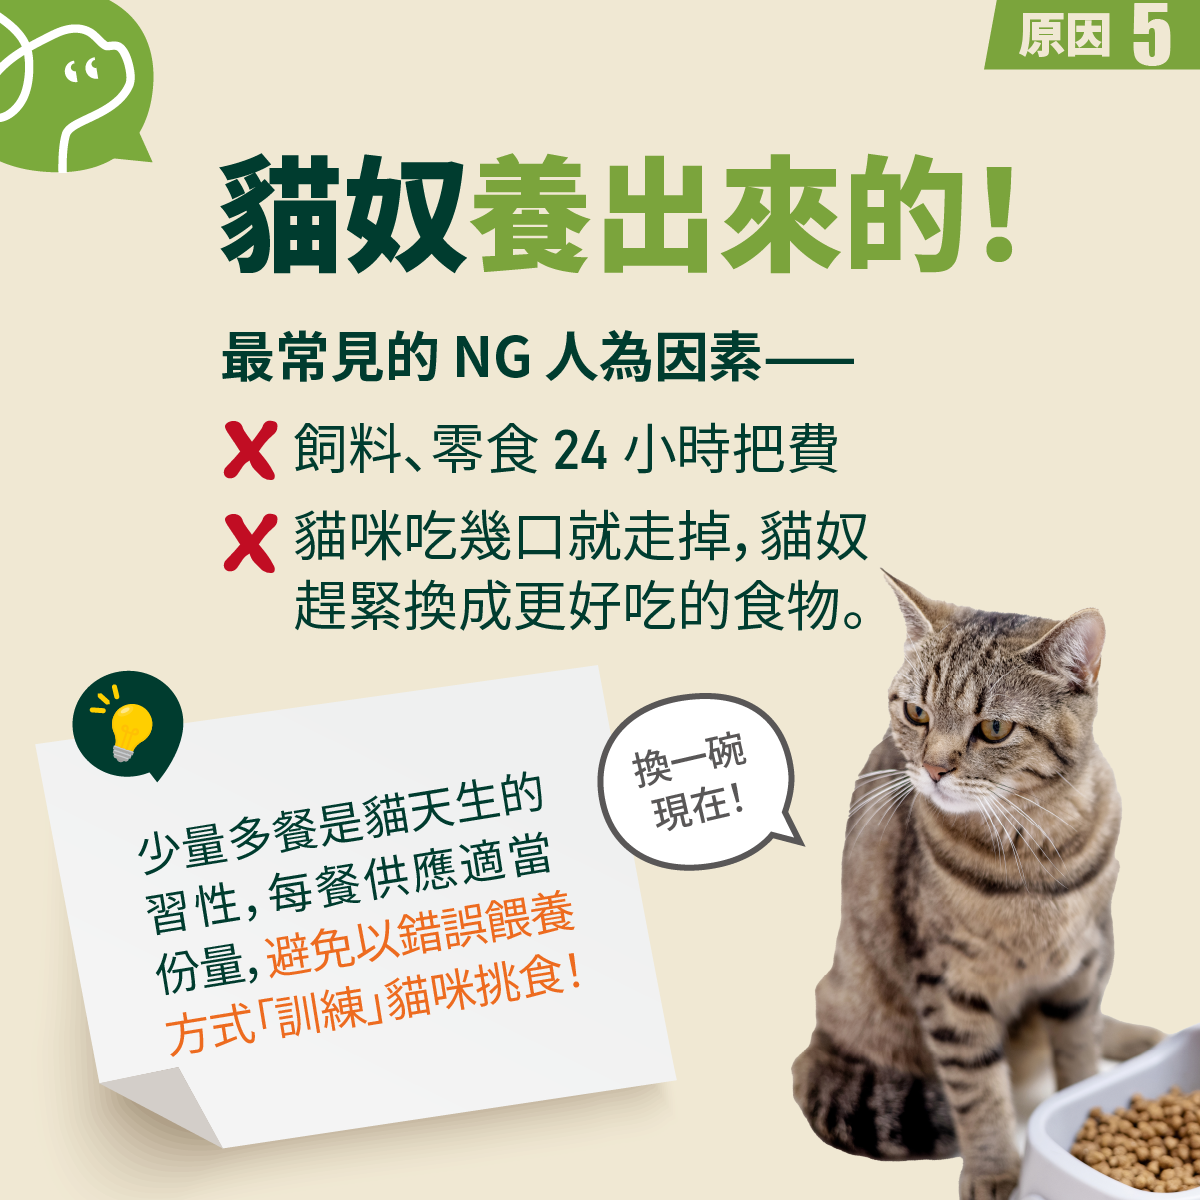 最常見的 NG 人為因素——飼料、零食 24 小時把費。貓咪吃幾口就走掉，貓奴
趕緊換成更好吃的食物。 


